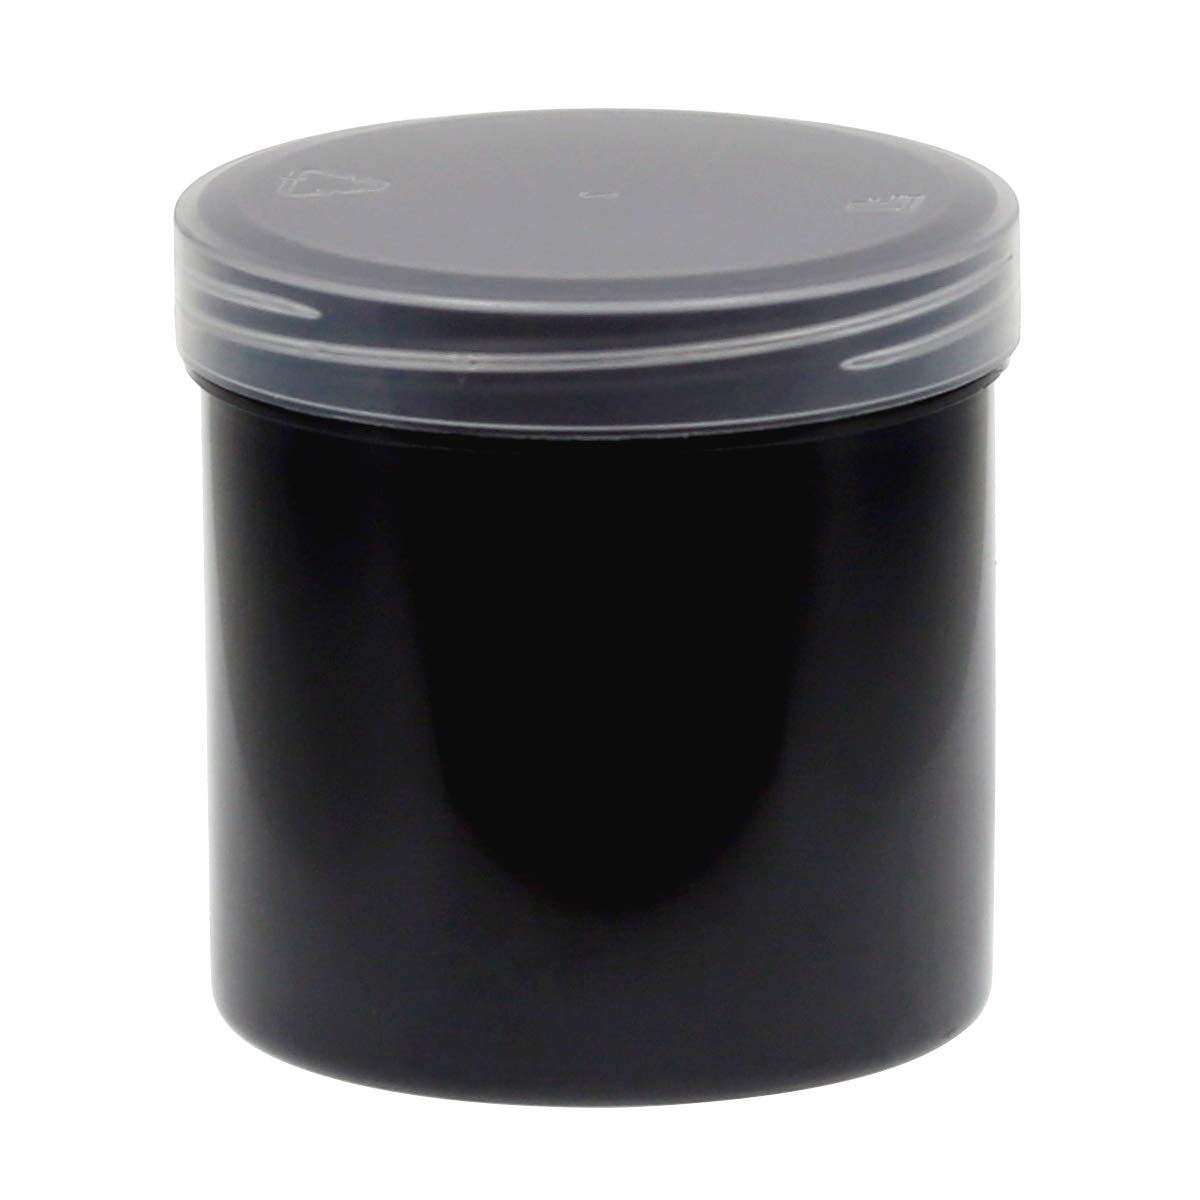 125ml Probendosen Schraubdeckeldosen Schraubdosen Cremedosen, Anzahl:100 Stück, Farbe:DoDe schwarz/transparent